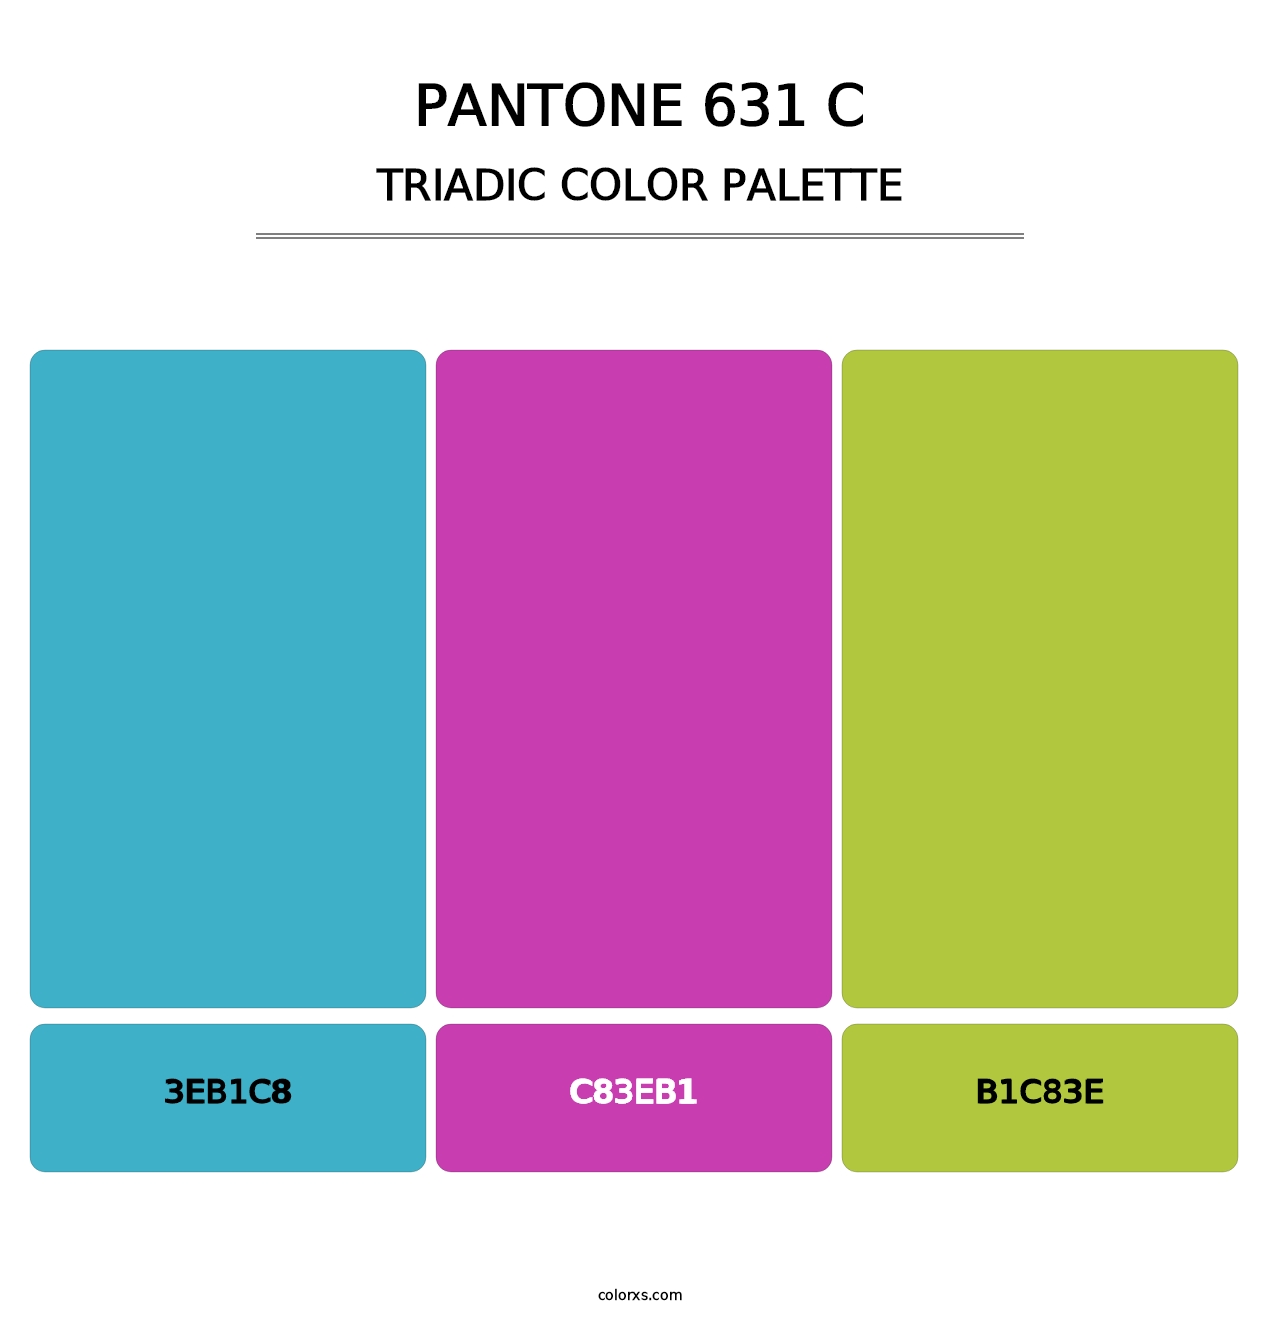 PANTONE 631 C - Triadic Color Palette